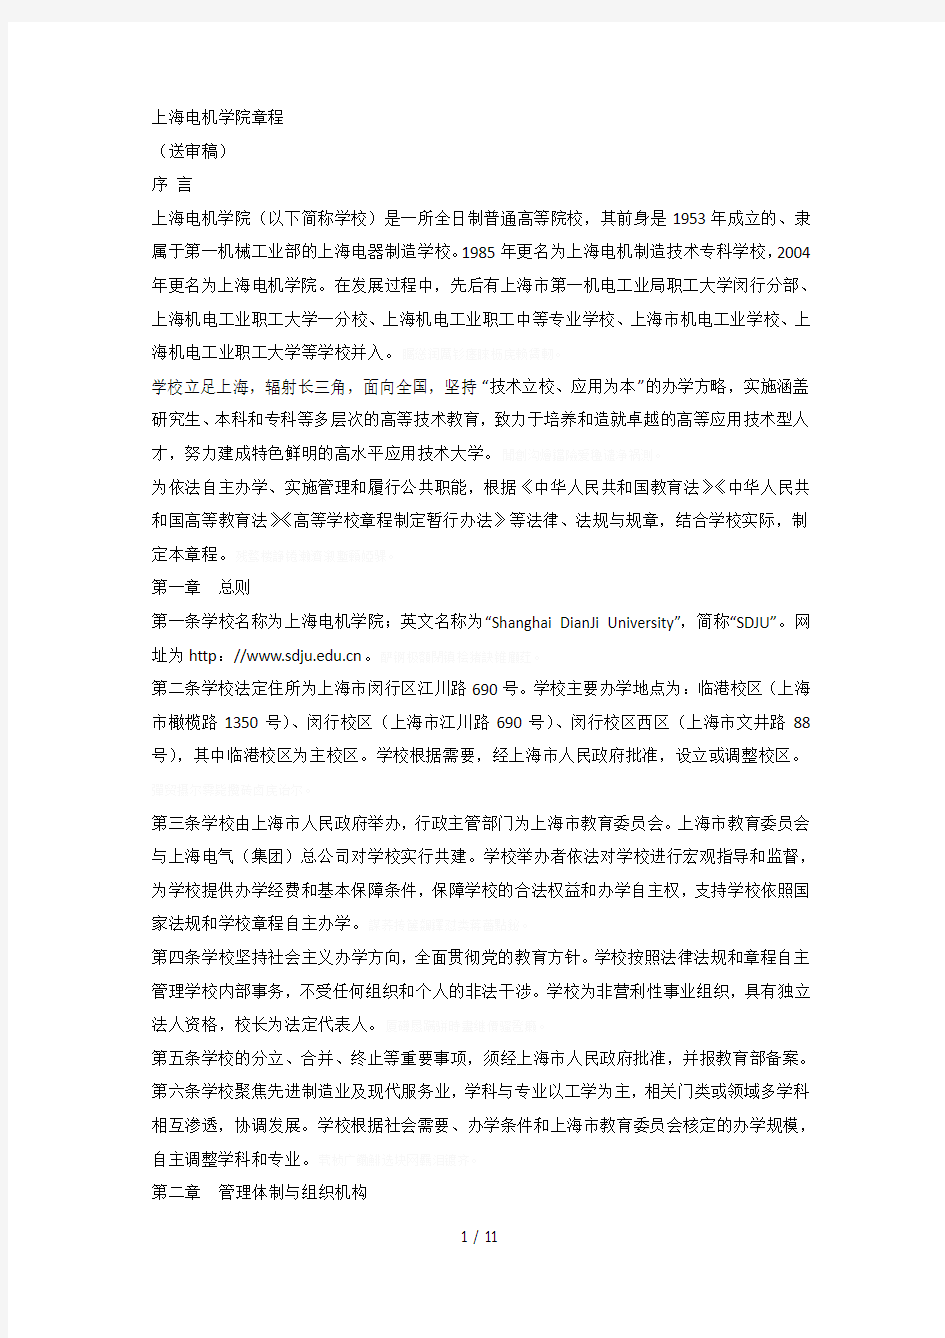 上海电机学院章程